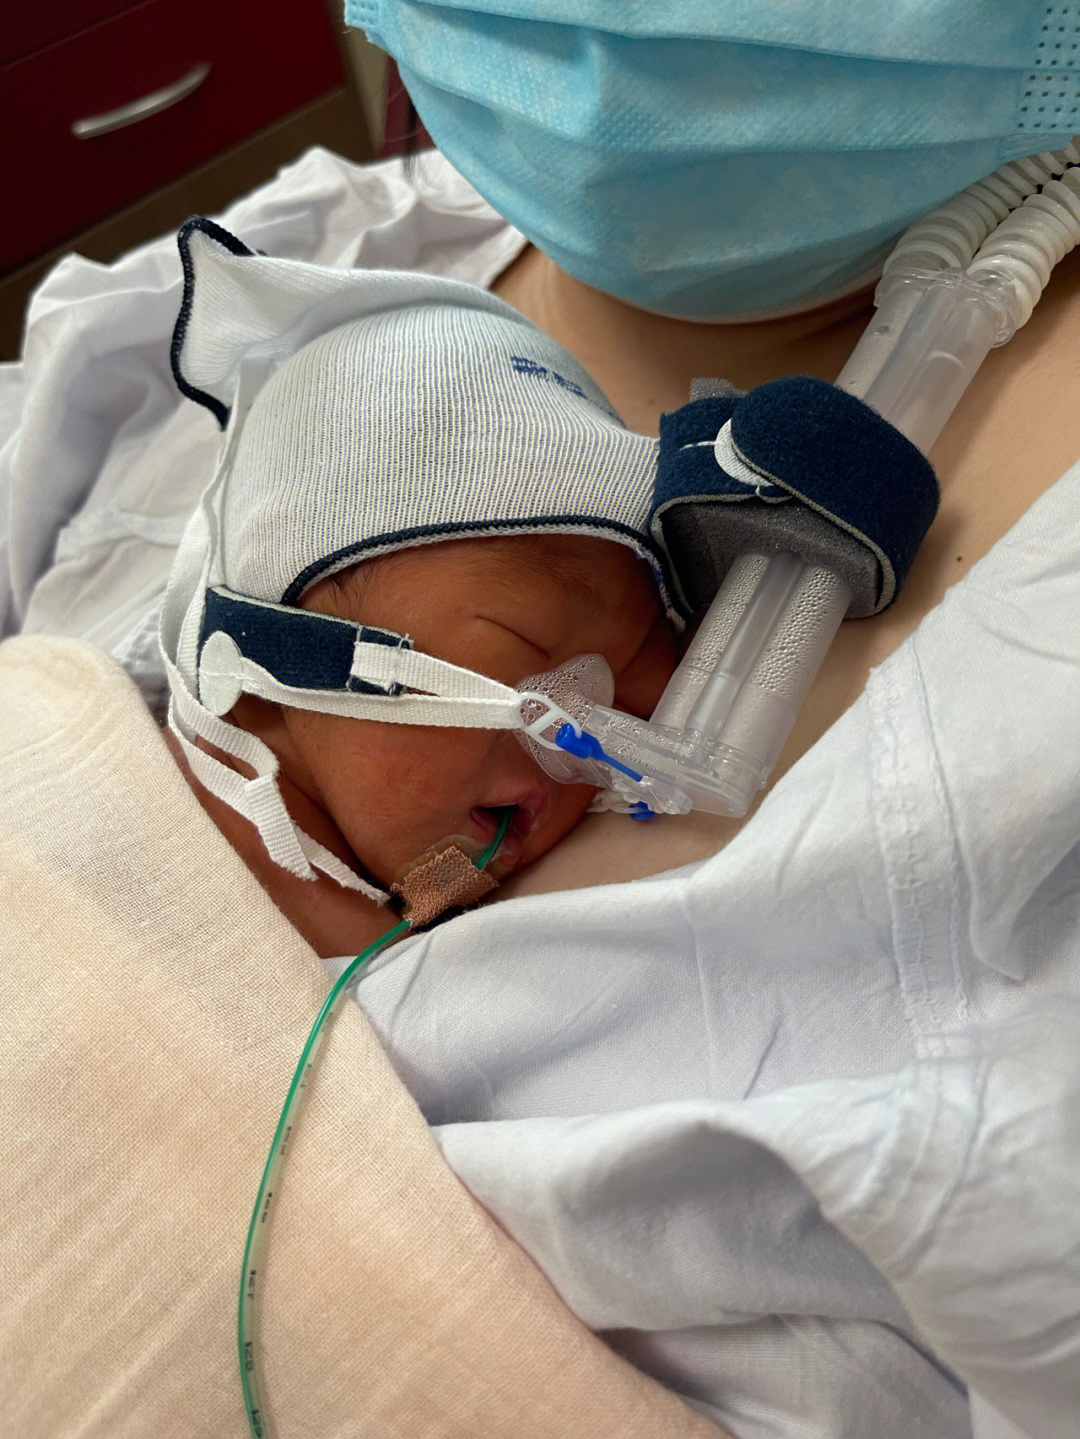 由于早产儿基本上都存在呼吸困难问题,所以得佩戴c